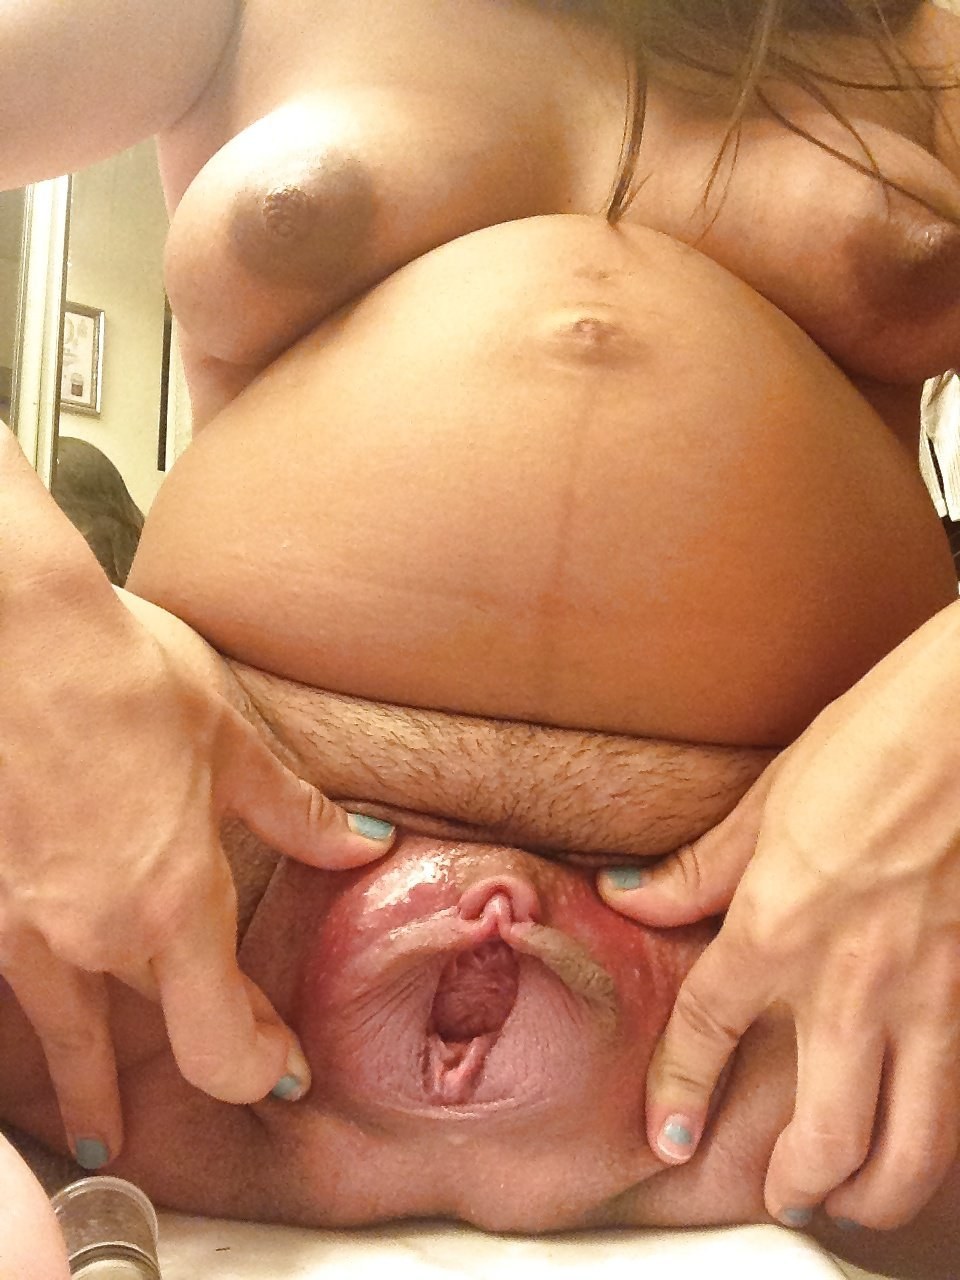 Писька беременна девушки - порно фото drochikula.com